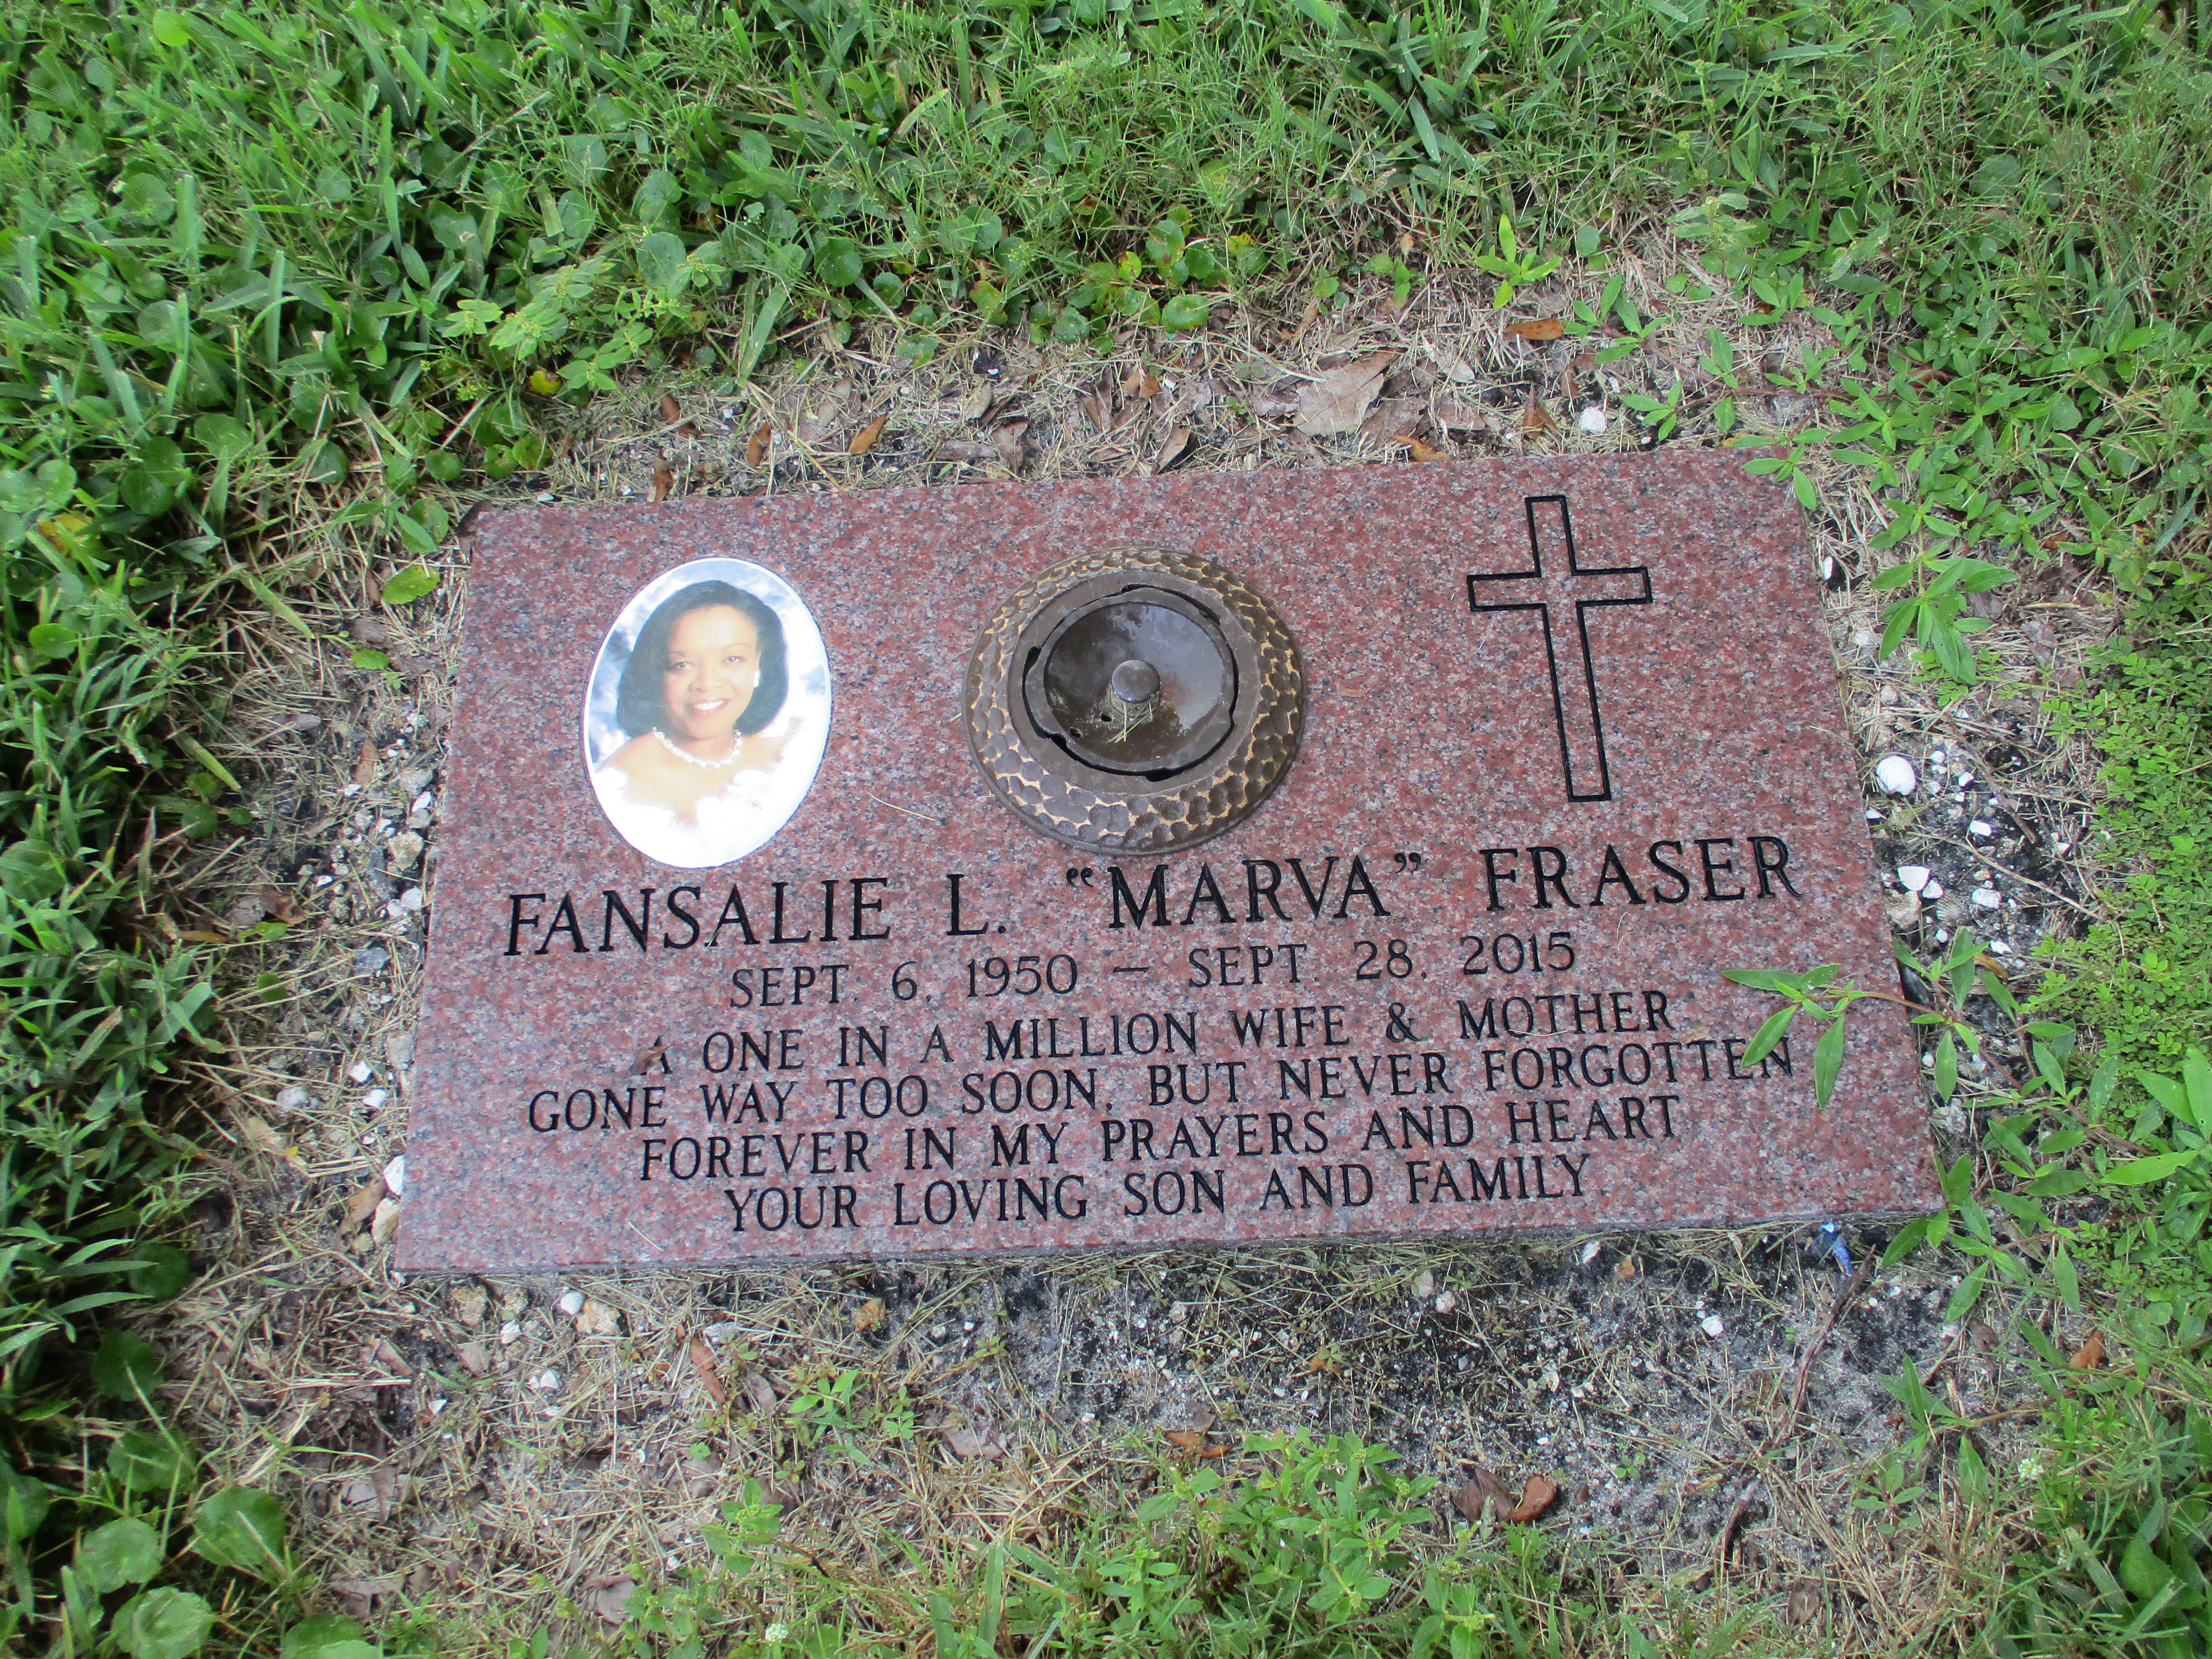 Fansalie L "Marva" Fraser